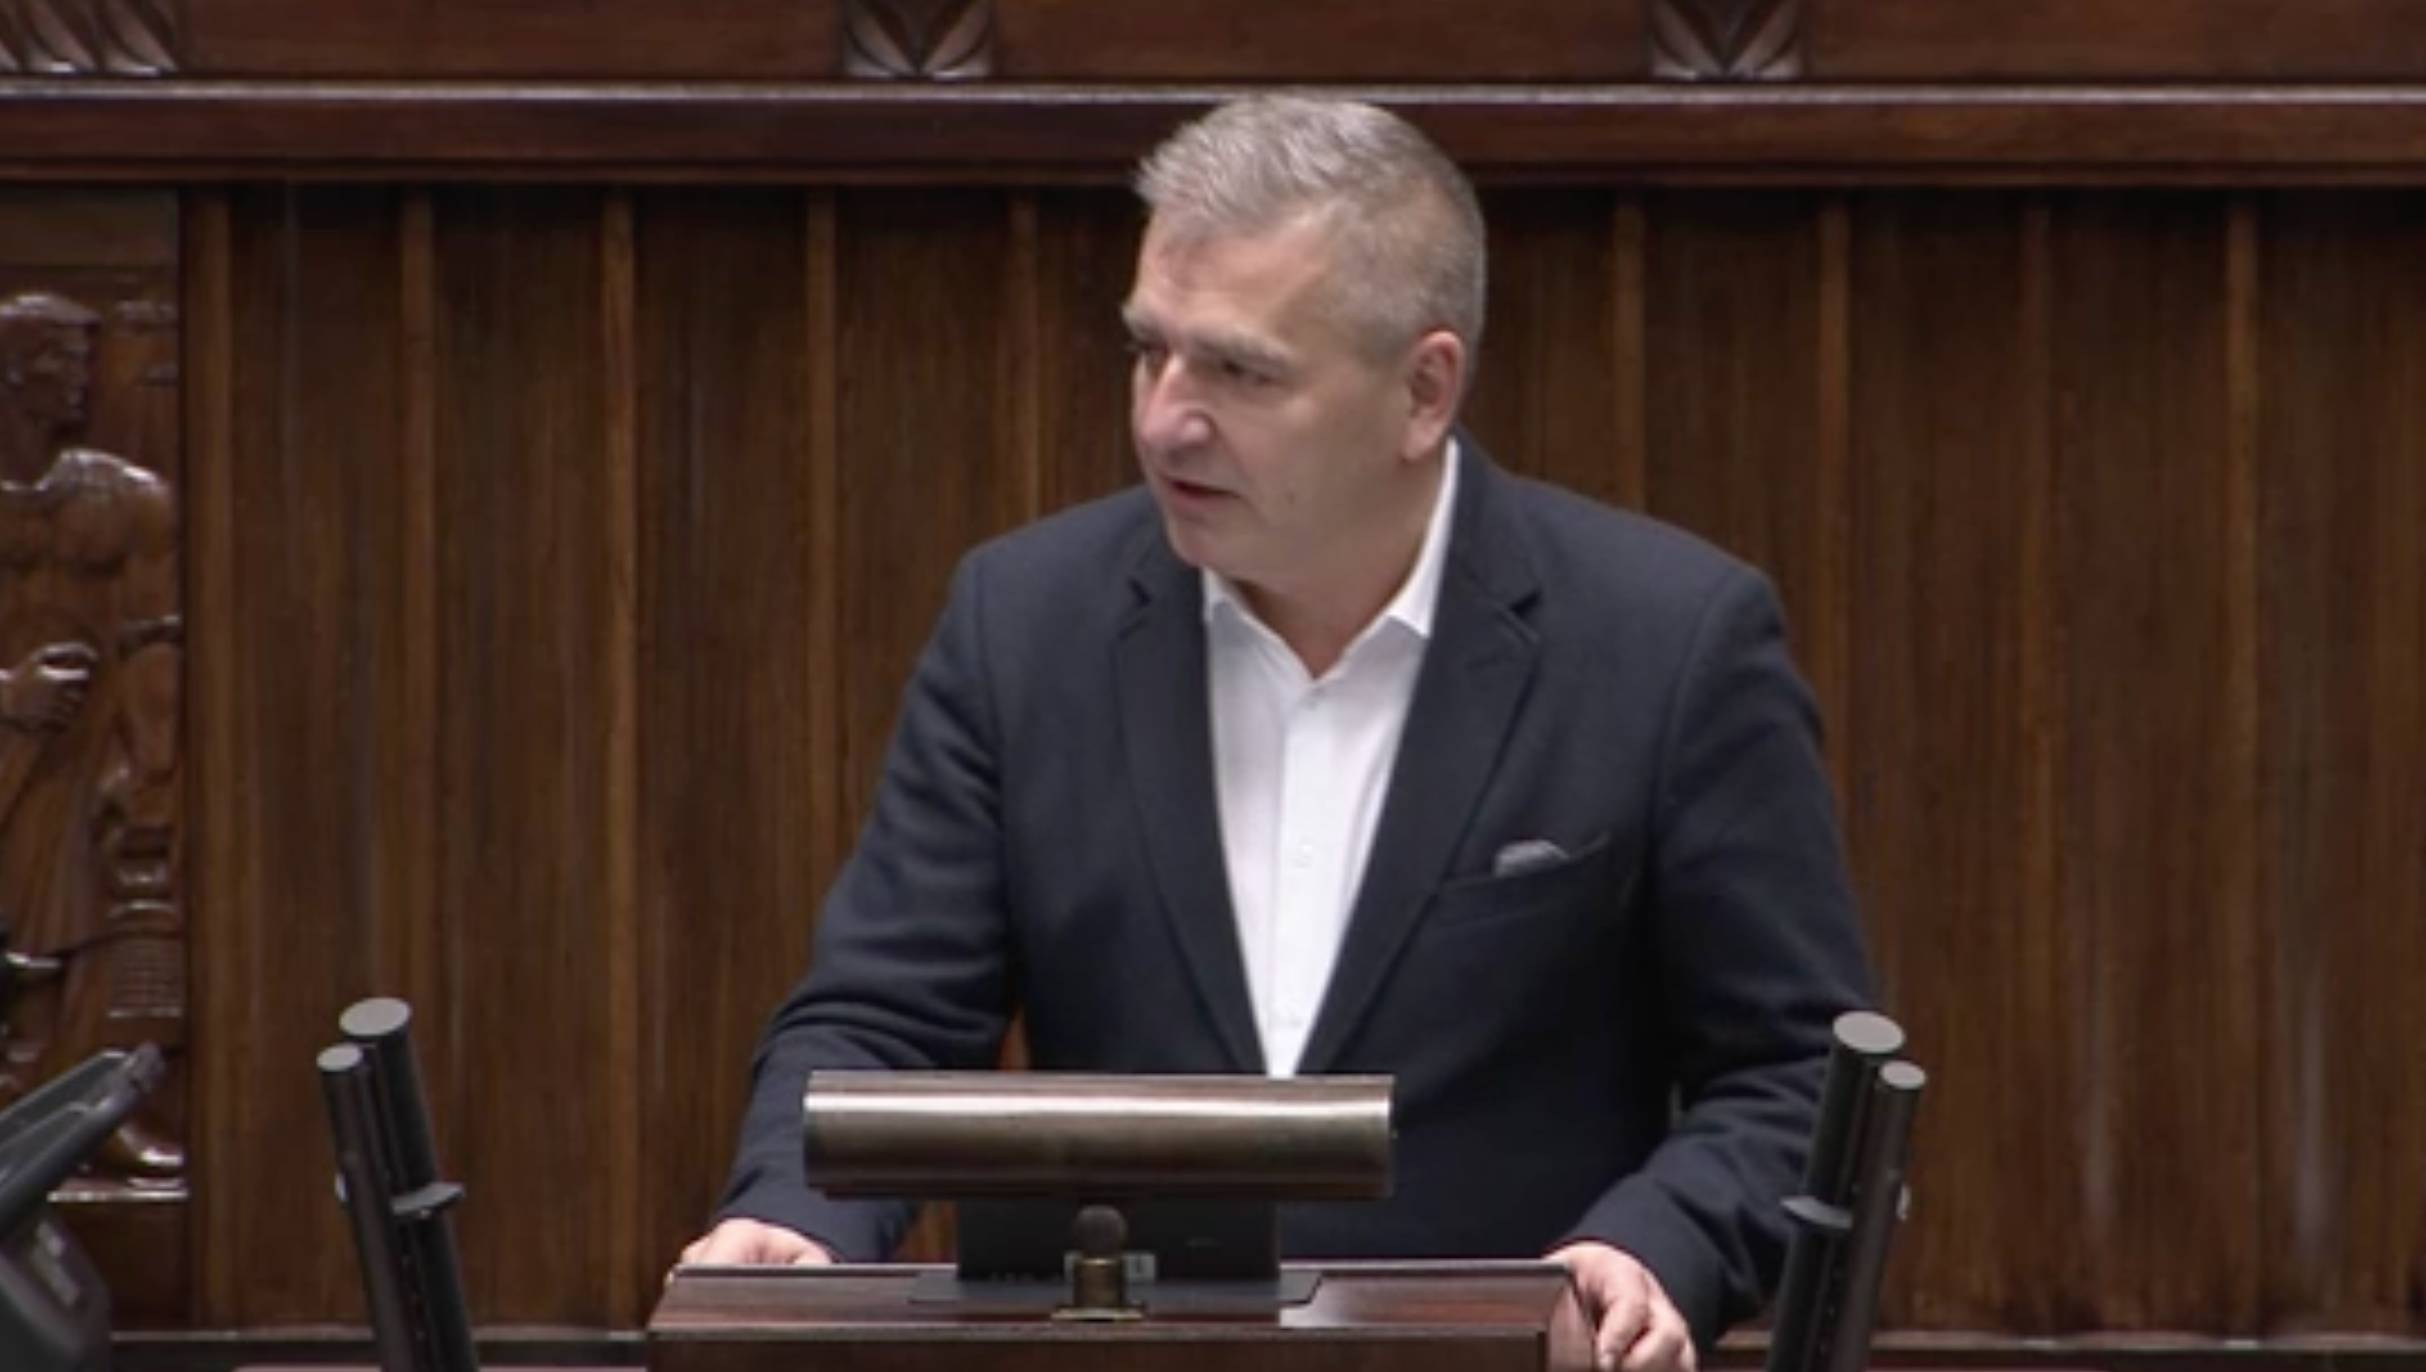 Na zdjęciu widzimy Bartosza Arłukowicza przemawiającego w Sejmie